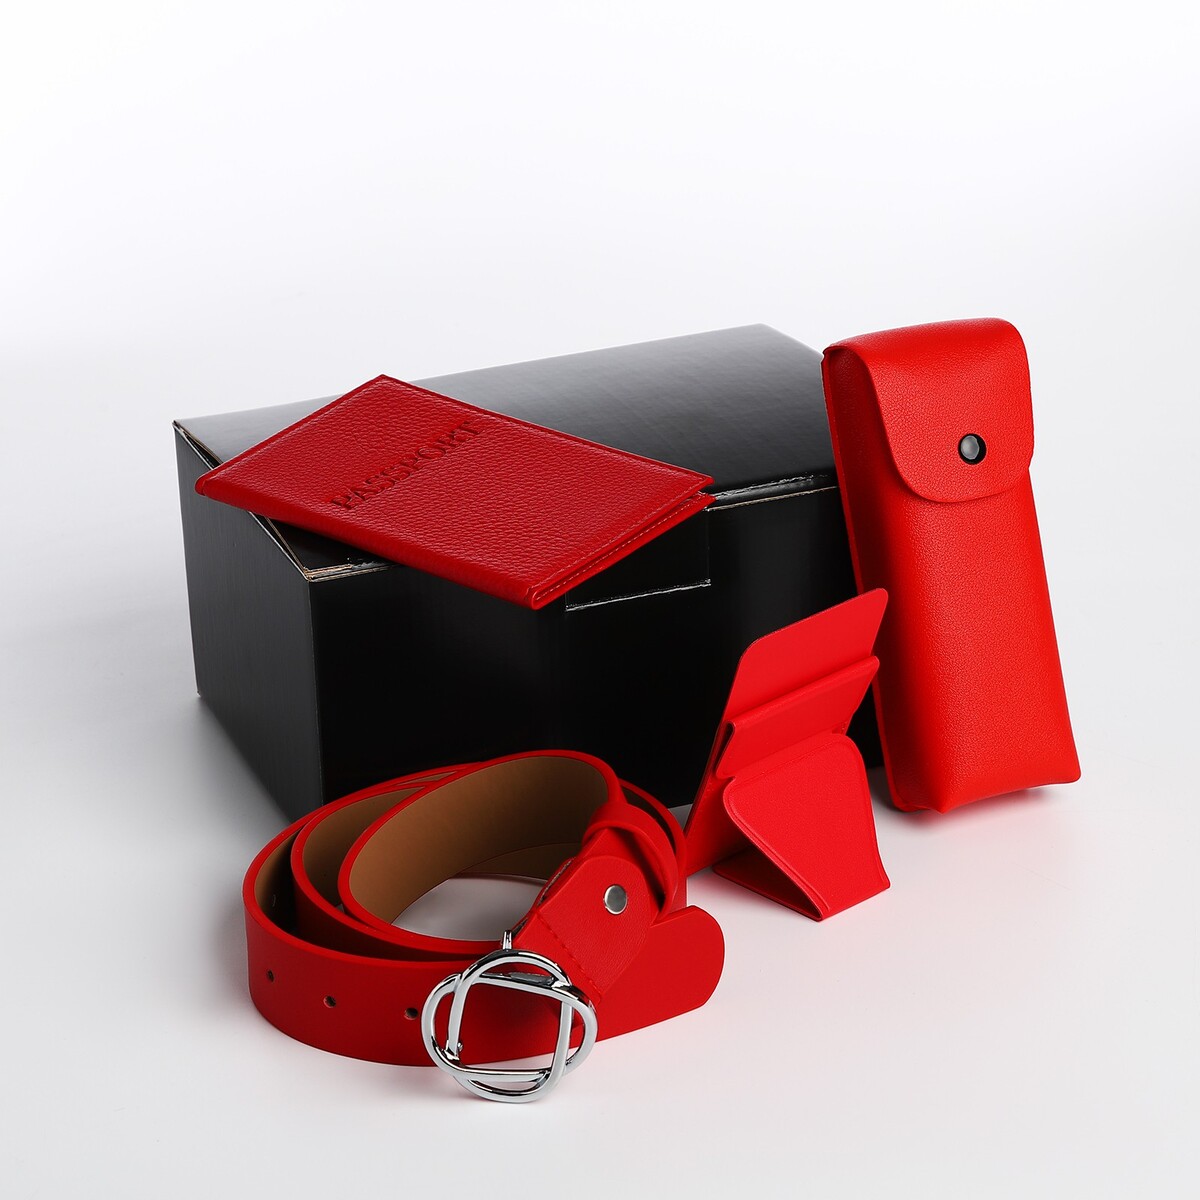 Подарочный набор, ремень с винтом, картхолдер на телефон, обложка для паспорта, футляр для очков, цвет красный картхолдер на телефон красный